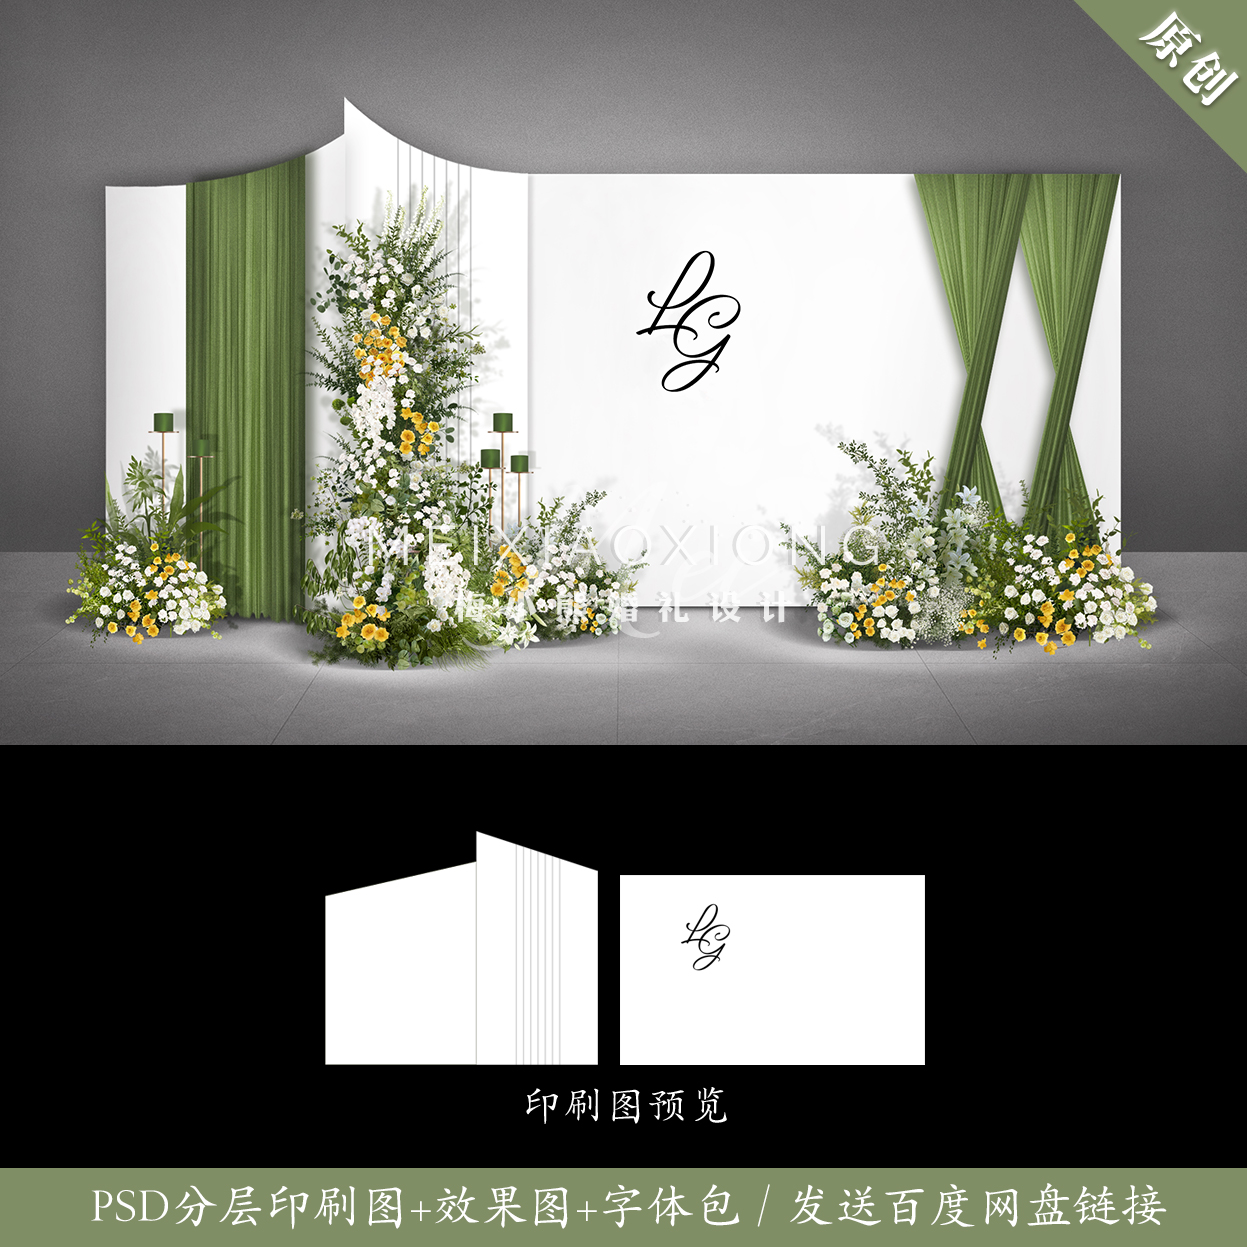 白绿色简约婚礼设计效果图 结婚背景墙迎宾签到区KT板P布置SD素材